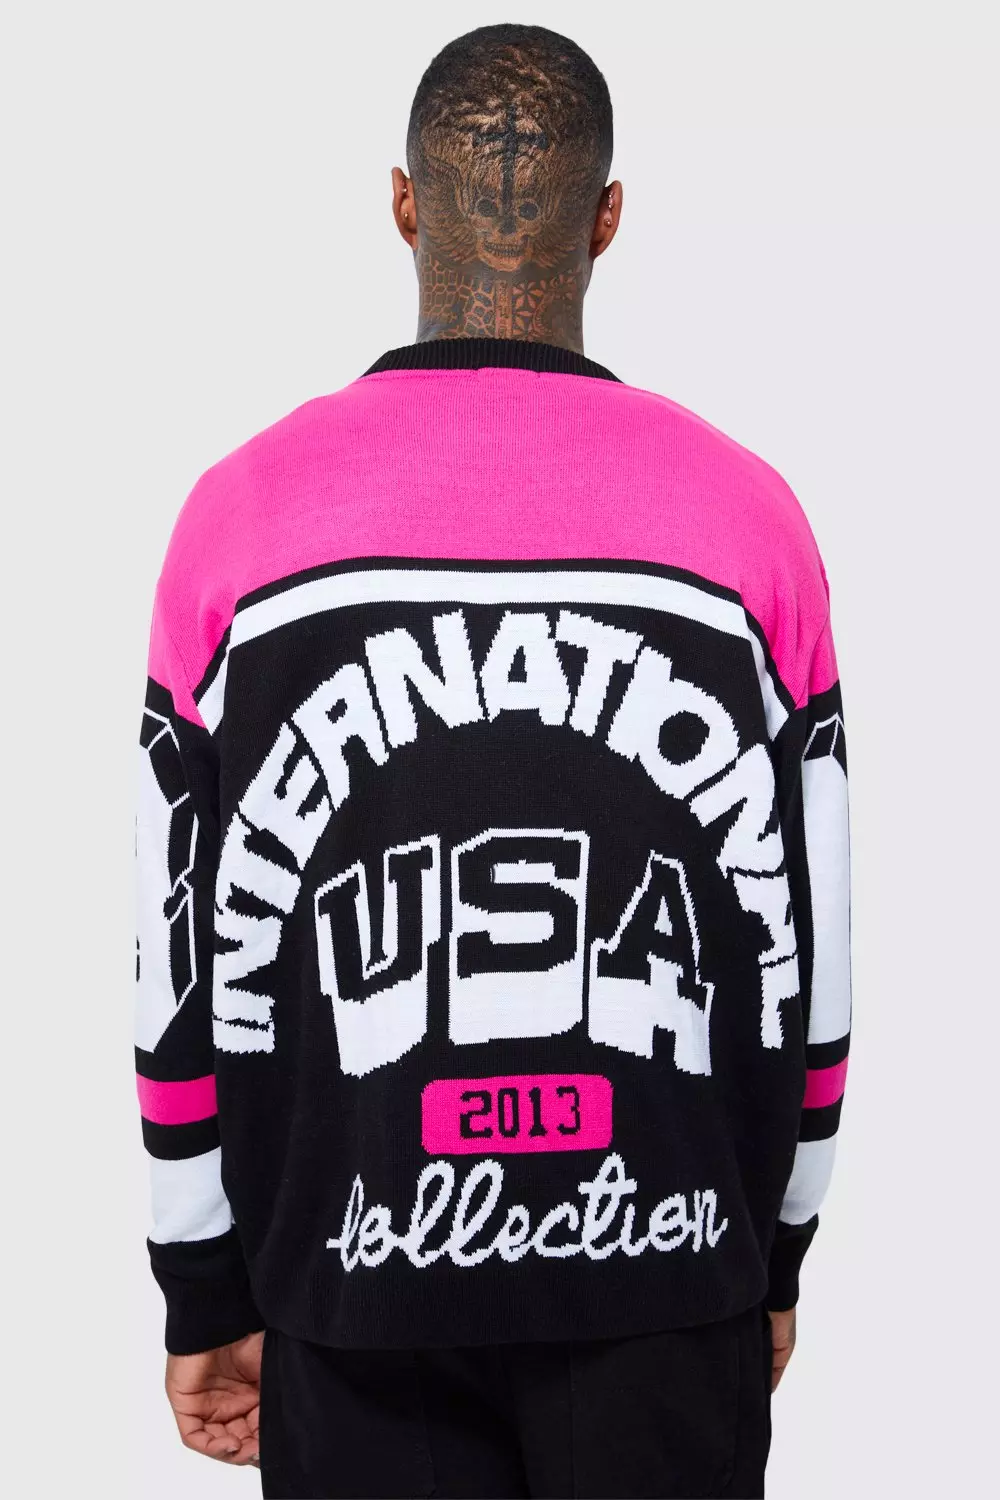 Moto Season Open Cuff Knitted Sweater Pink